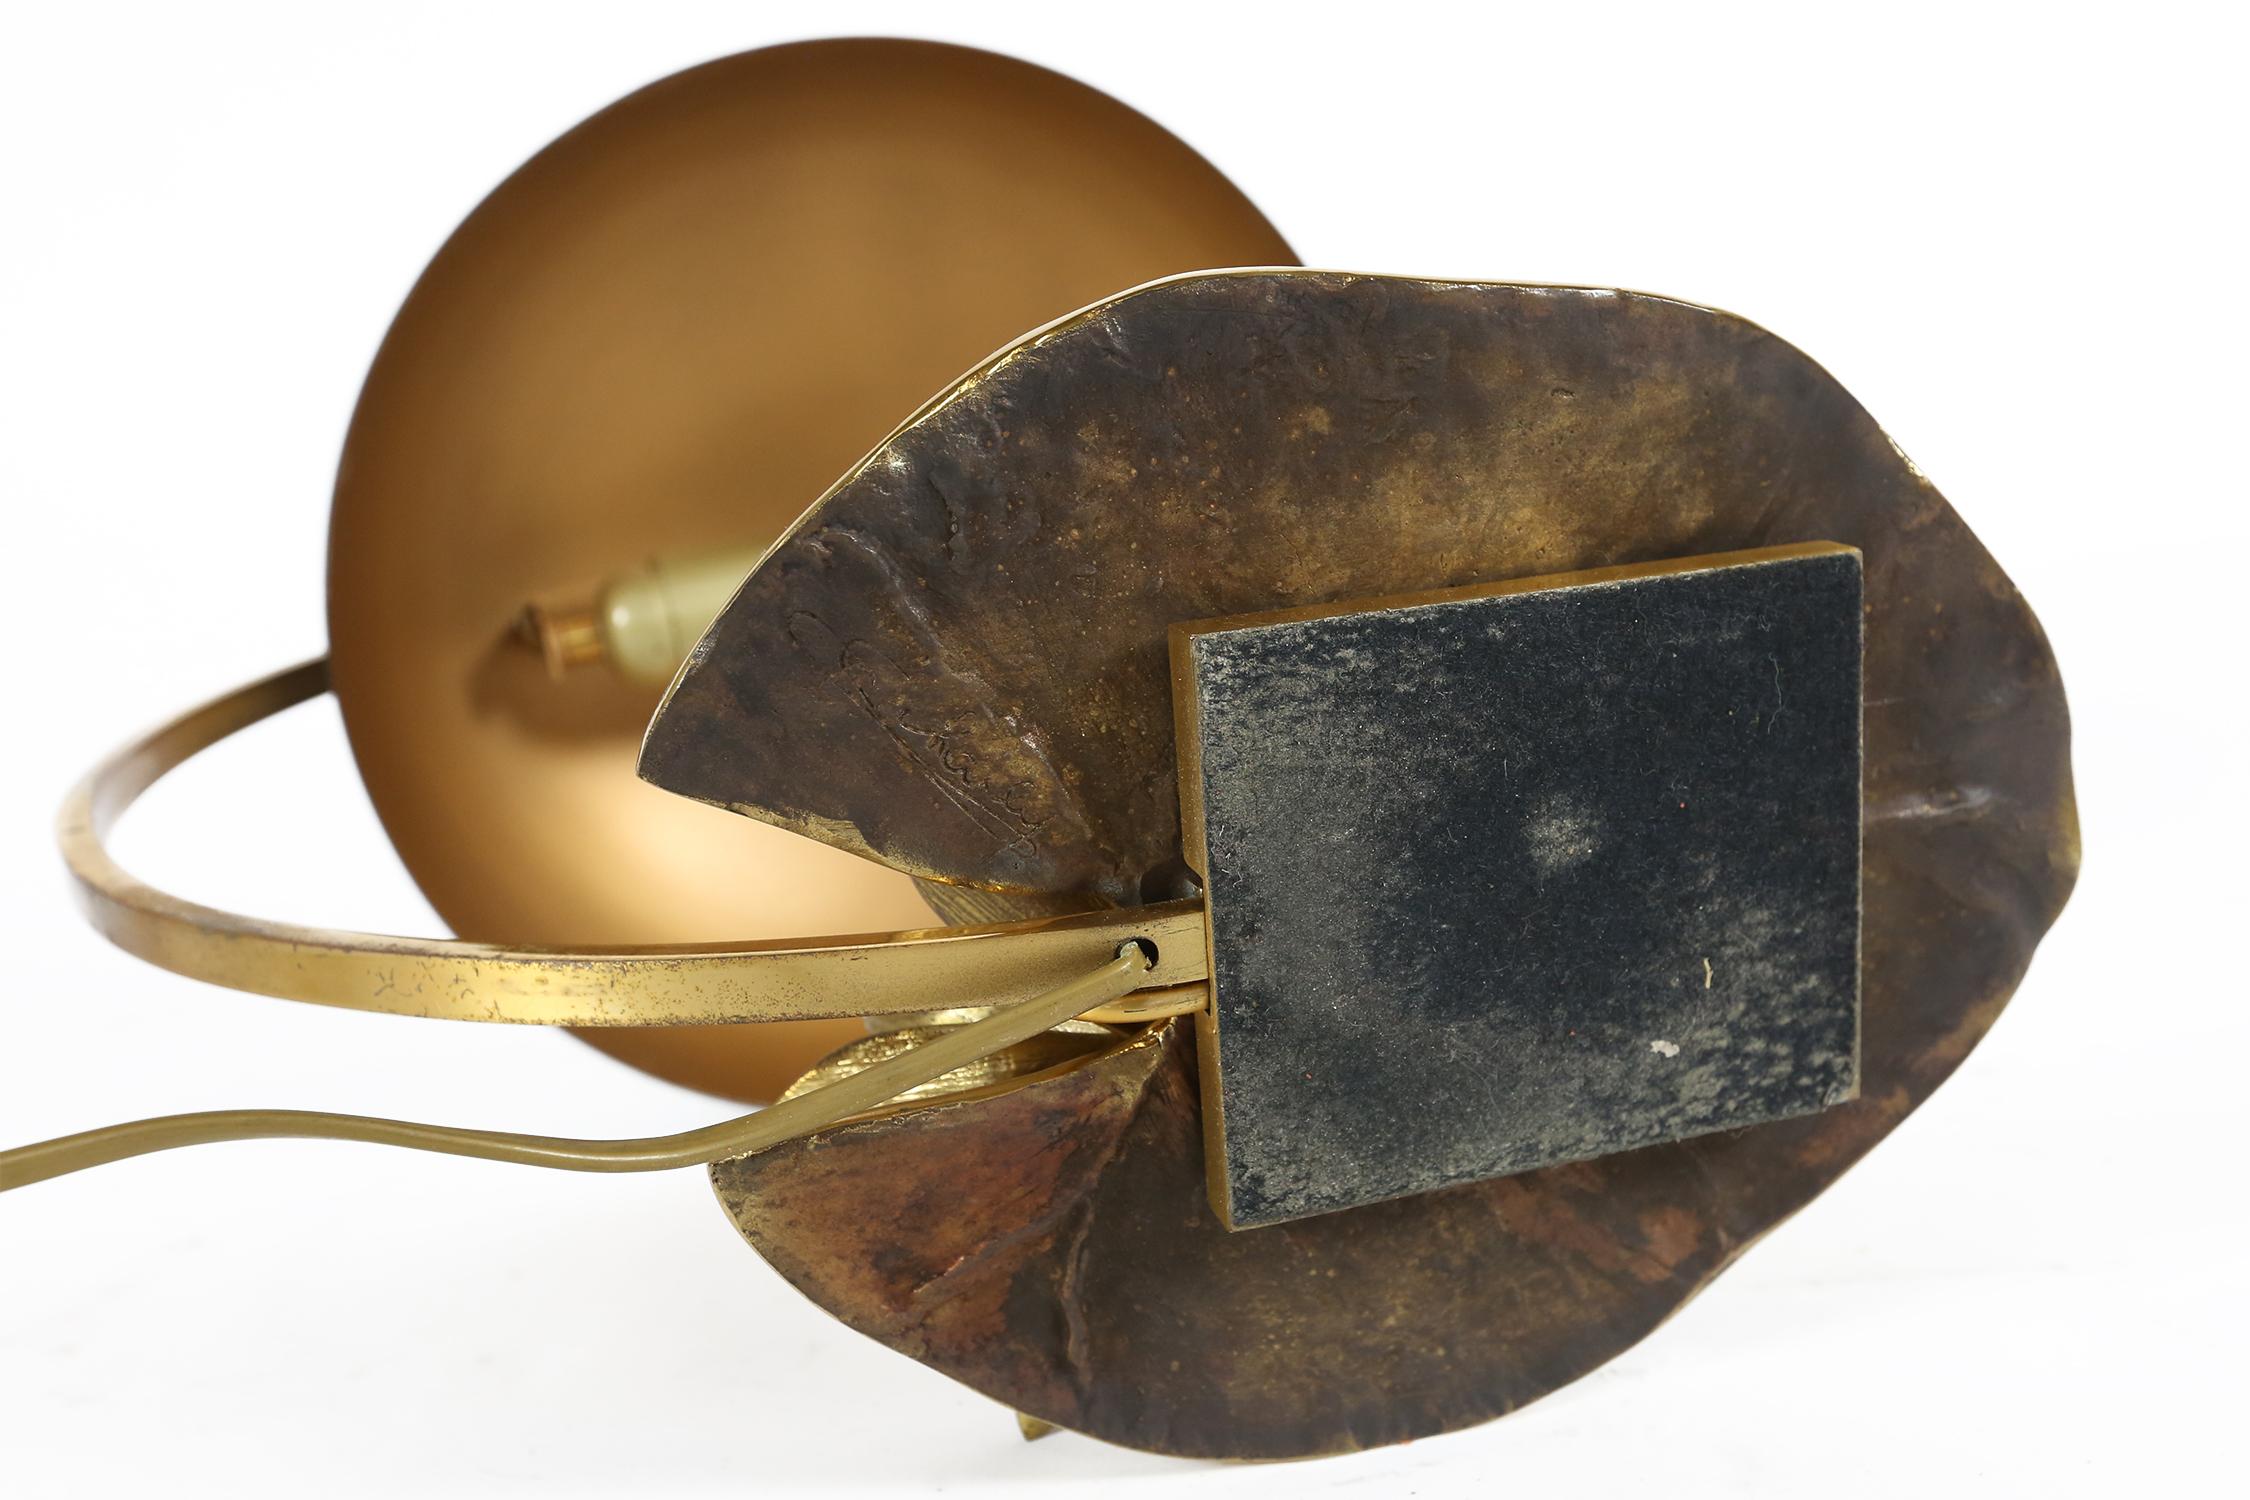 Maison Charles “Nenuphar” Bronze Table Lamp Designed by Chrystiane Charles 1